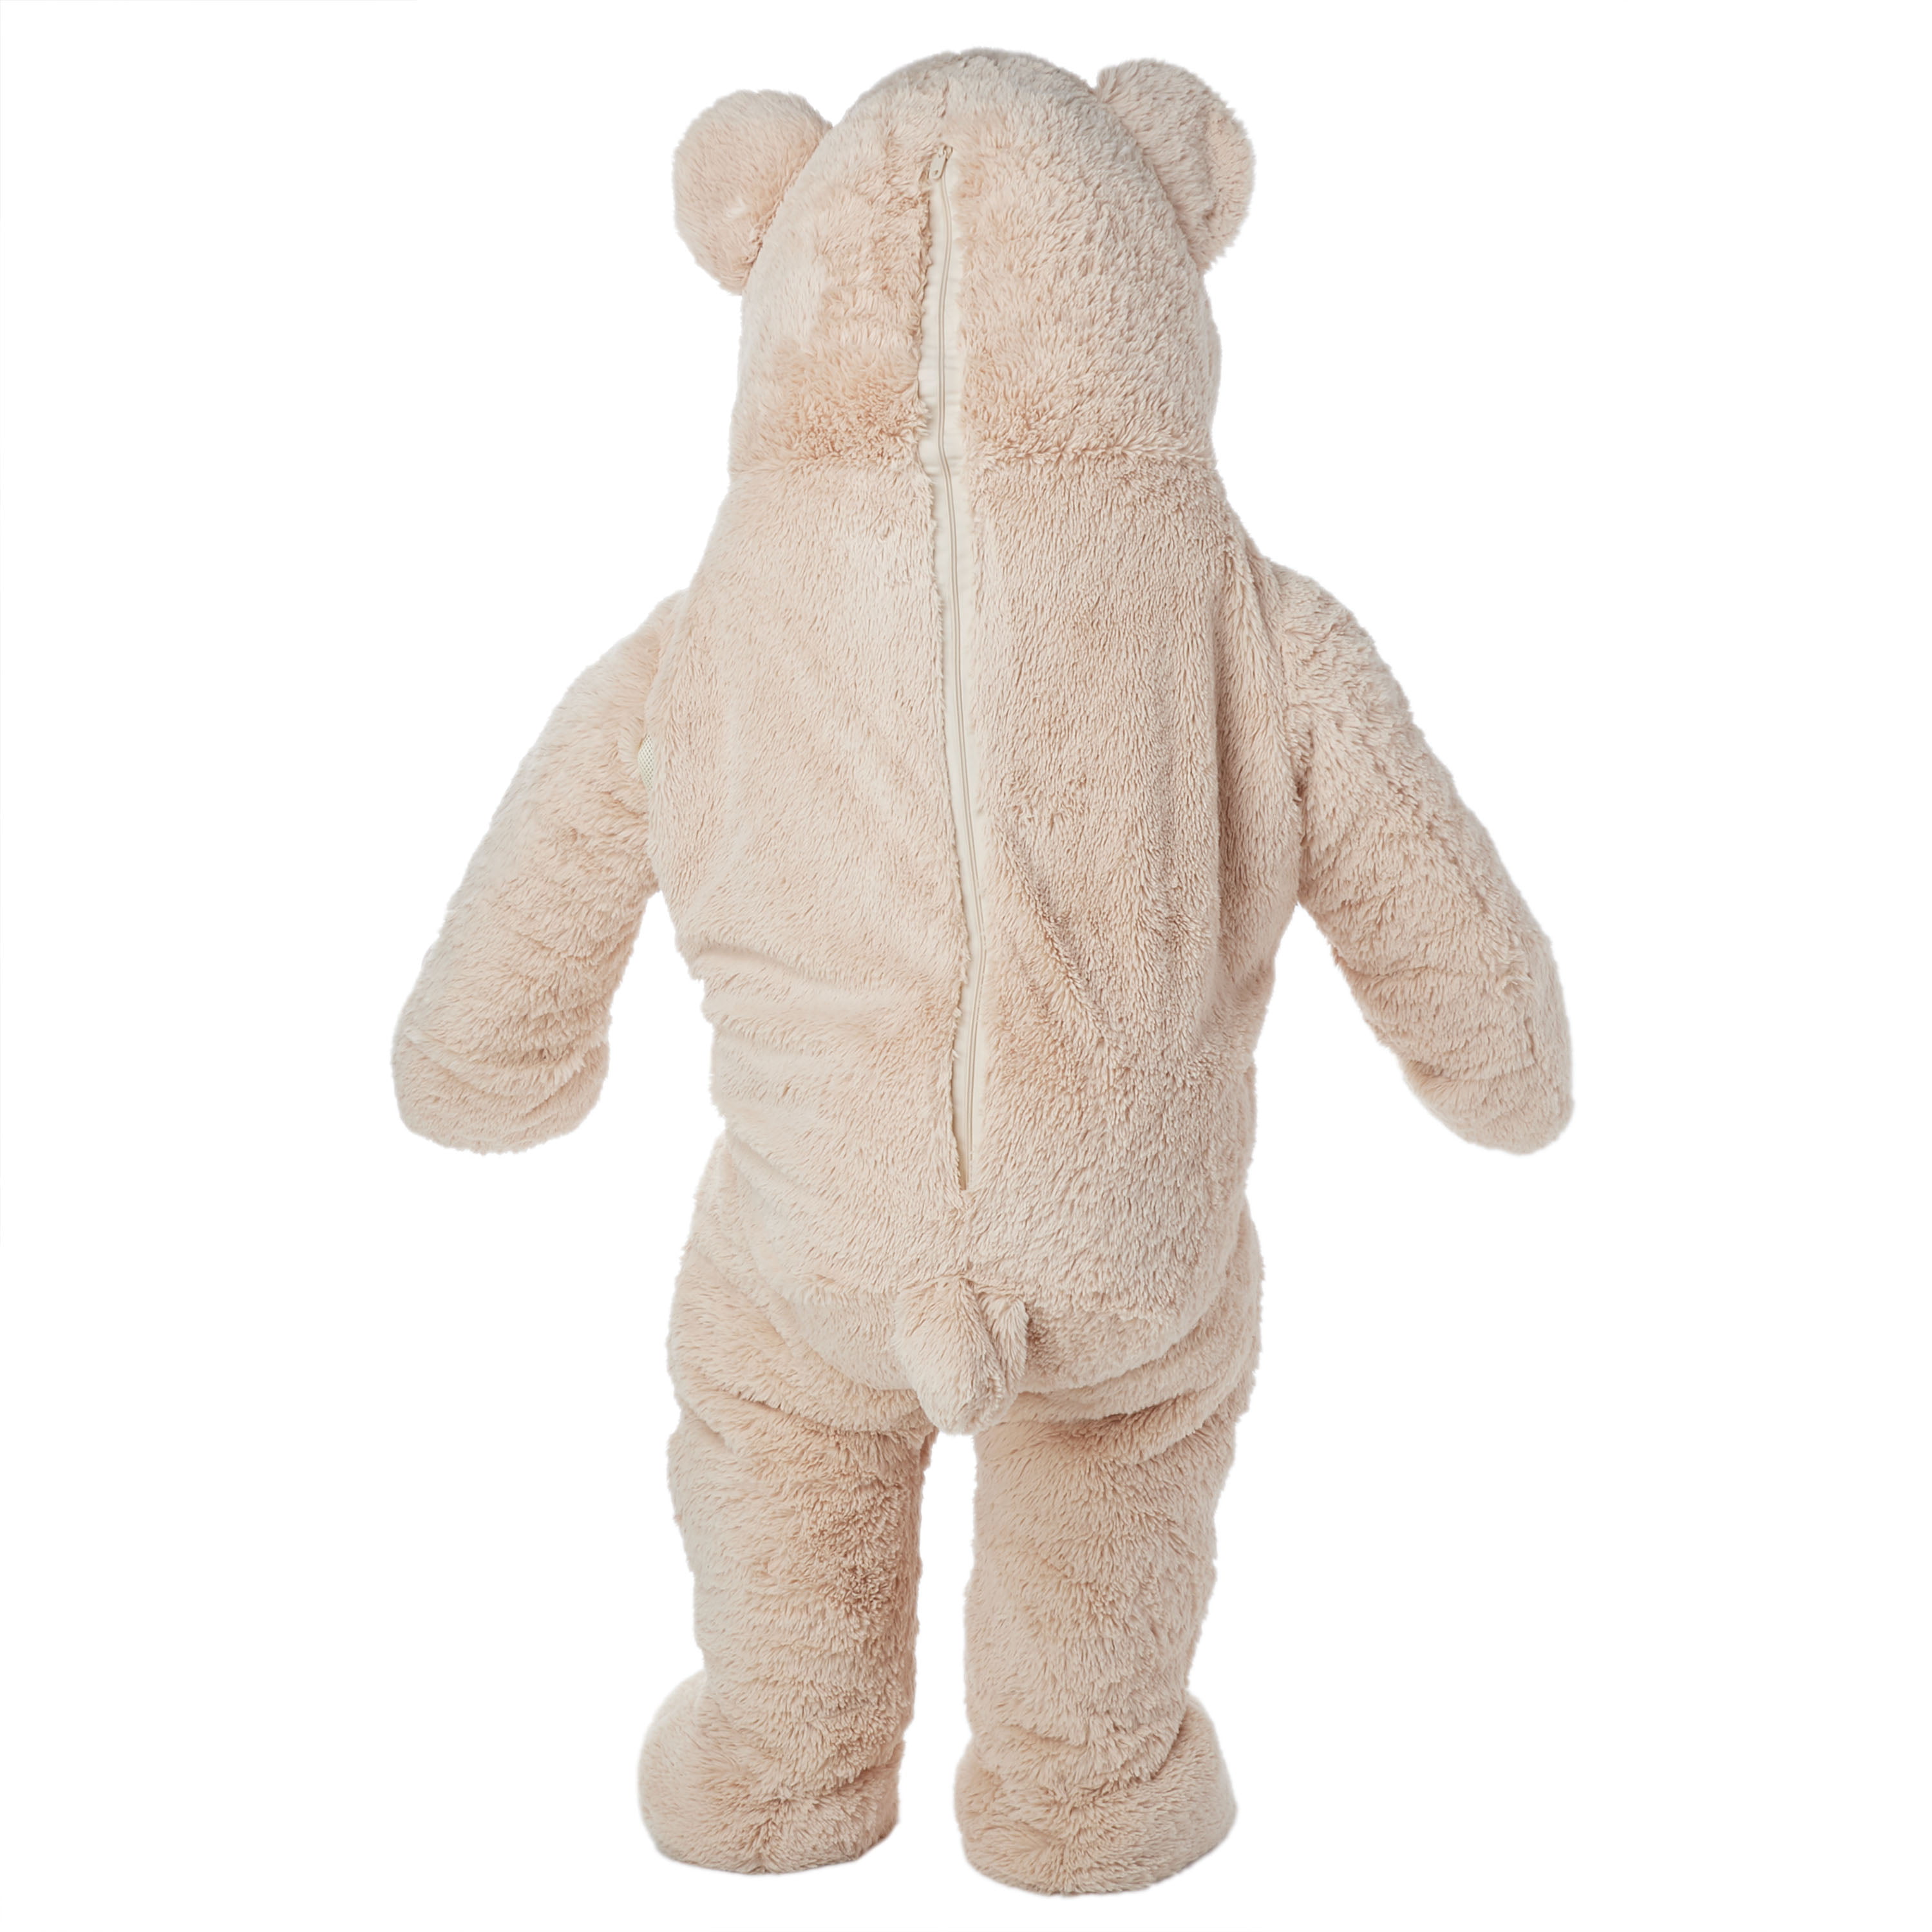 big teddy bear outfit